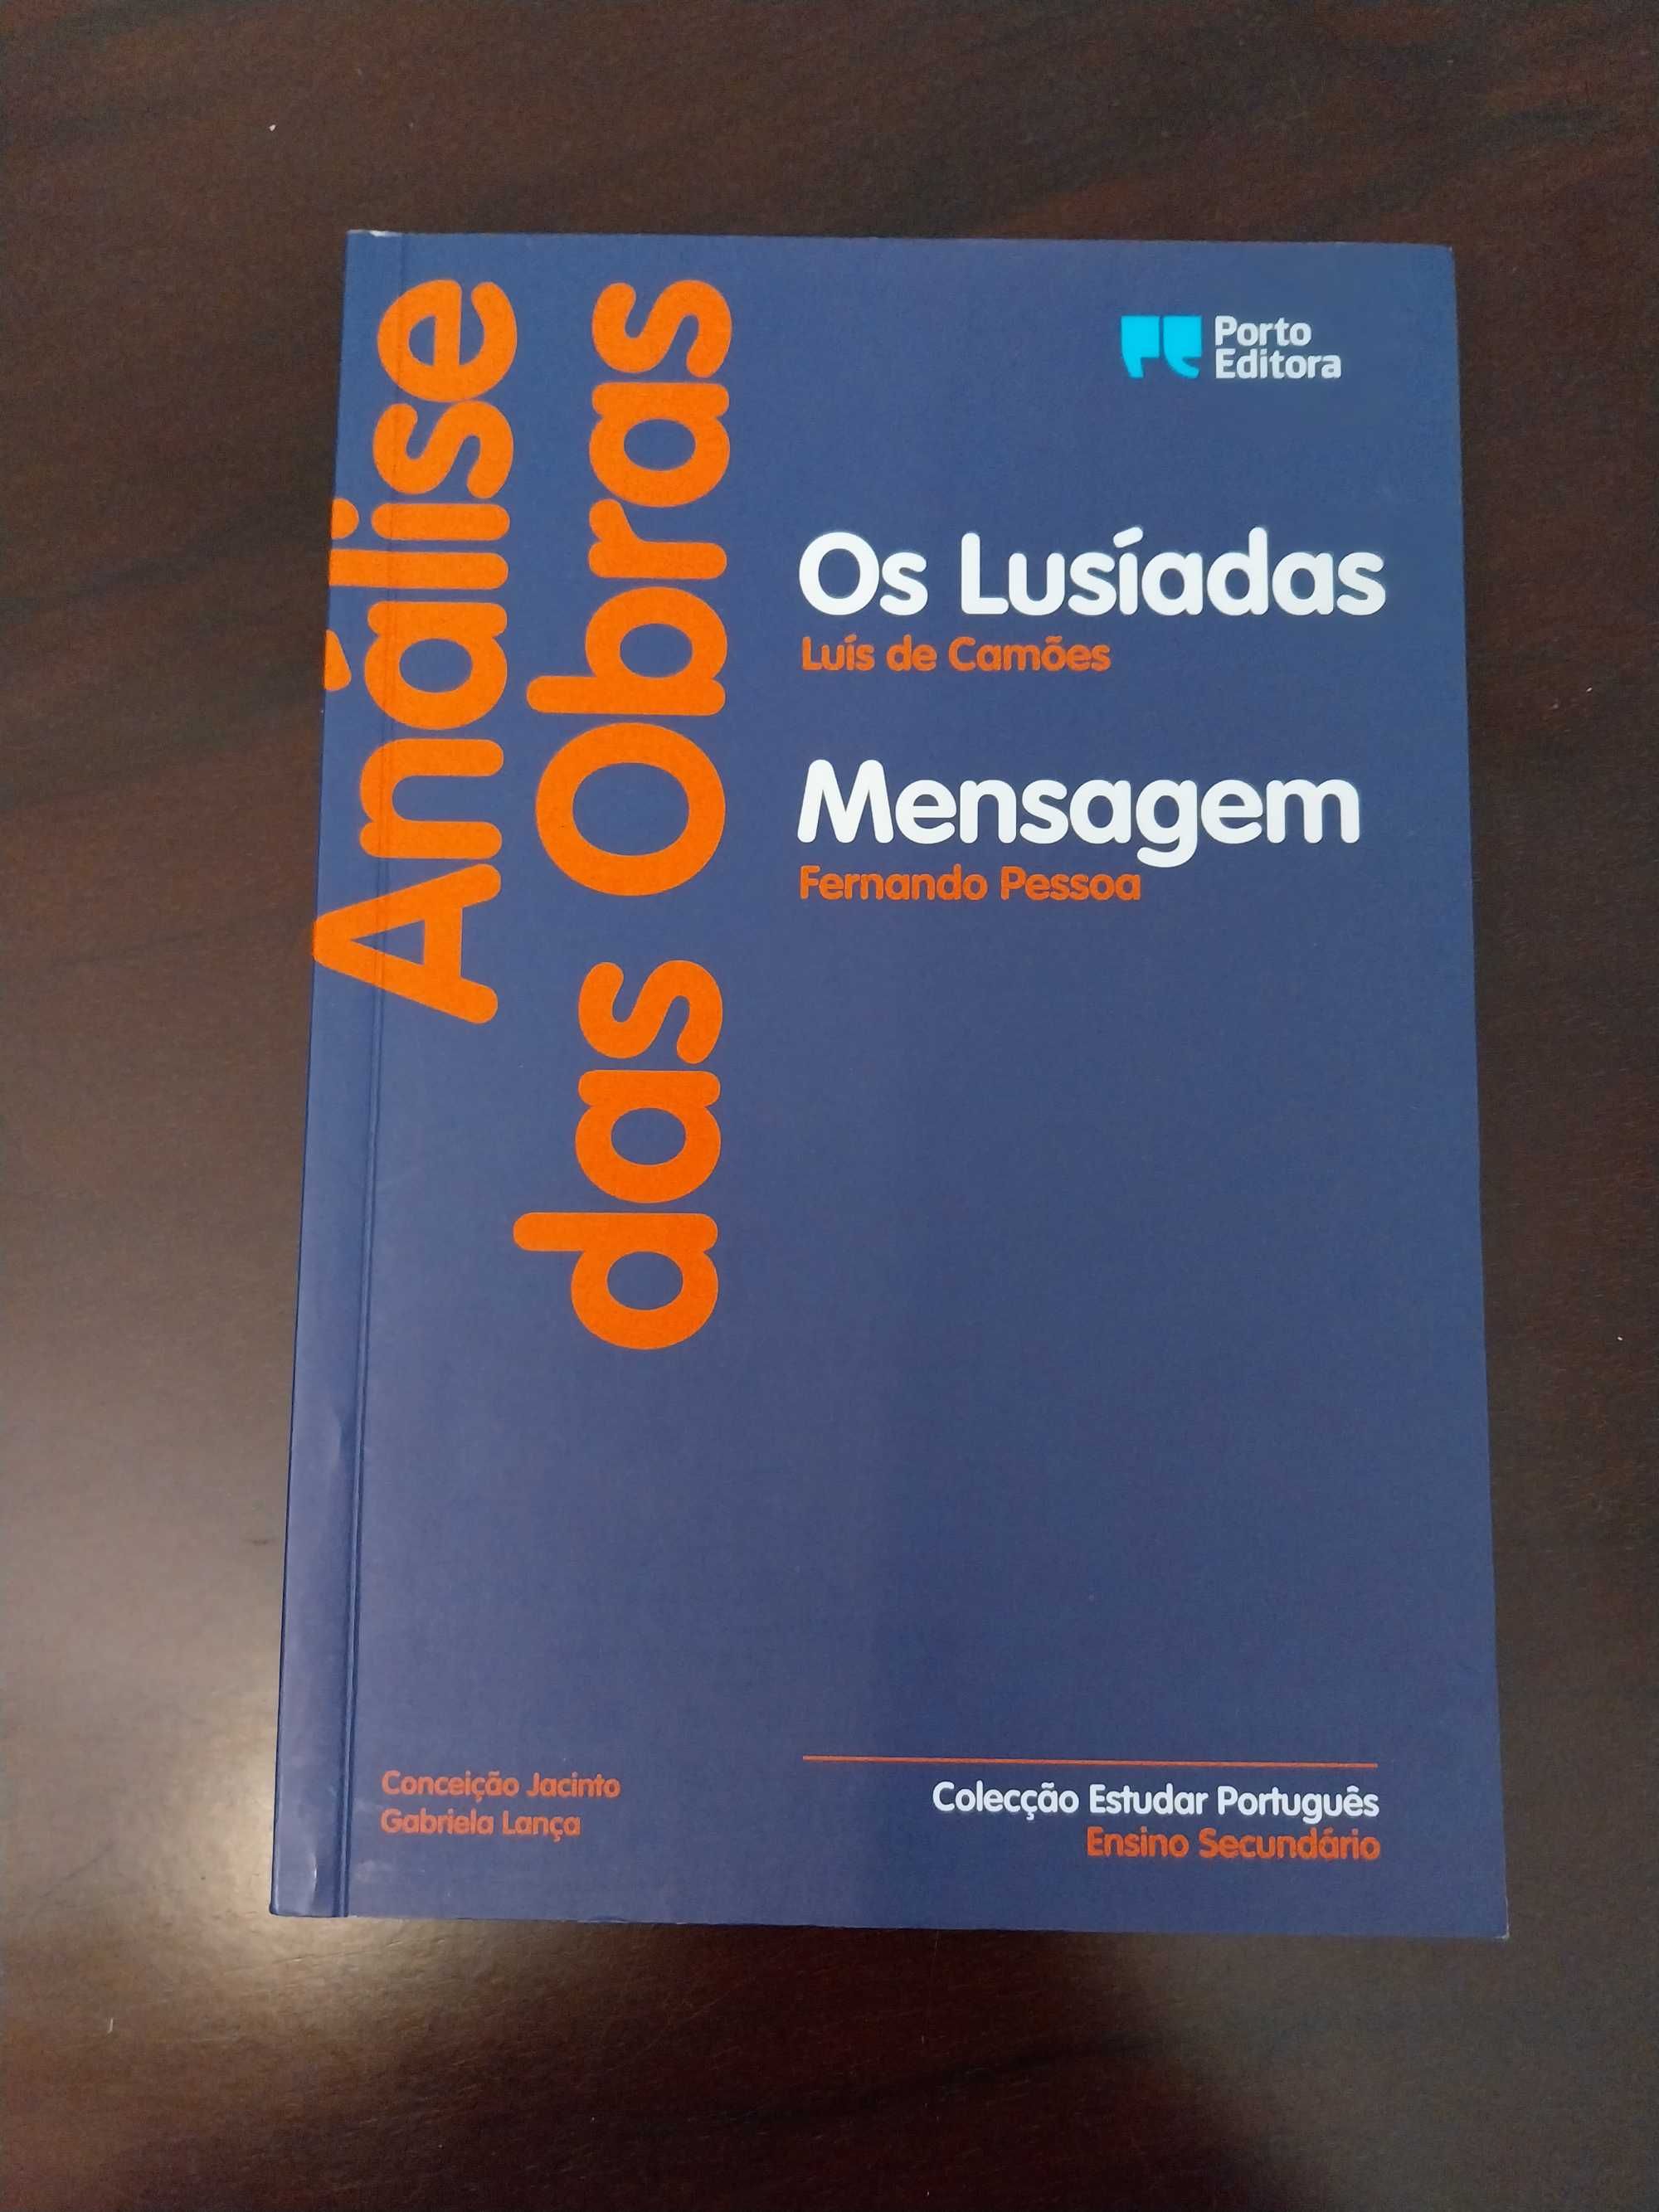 Análise de “Os Lusíadas” Luís de Camões” e “Mensagem” Fernando Pessoa